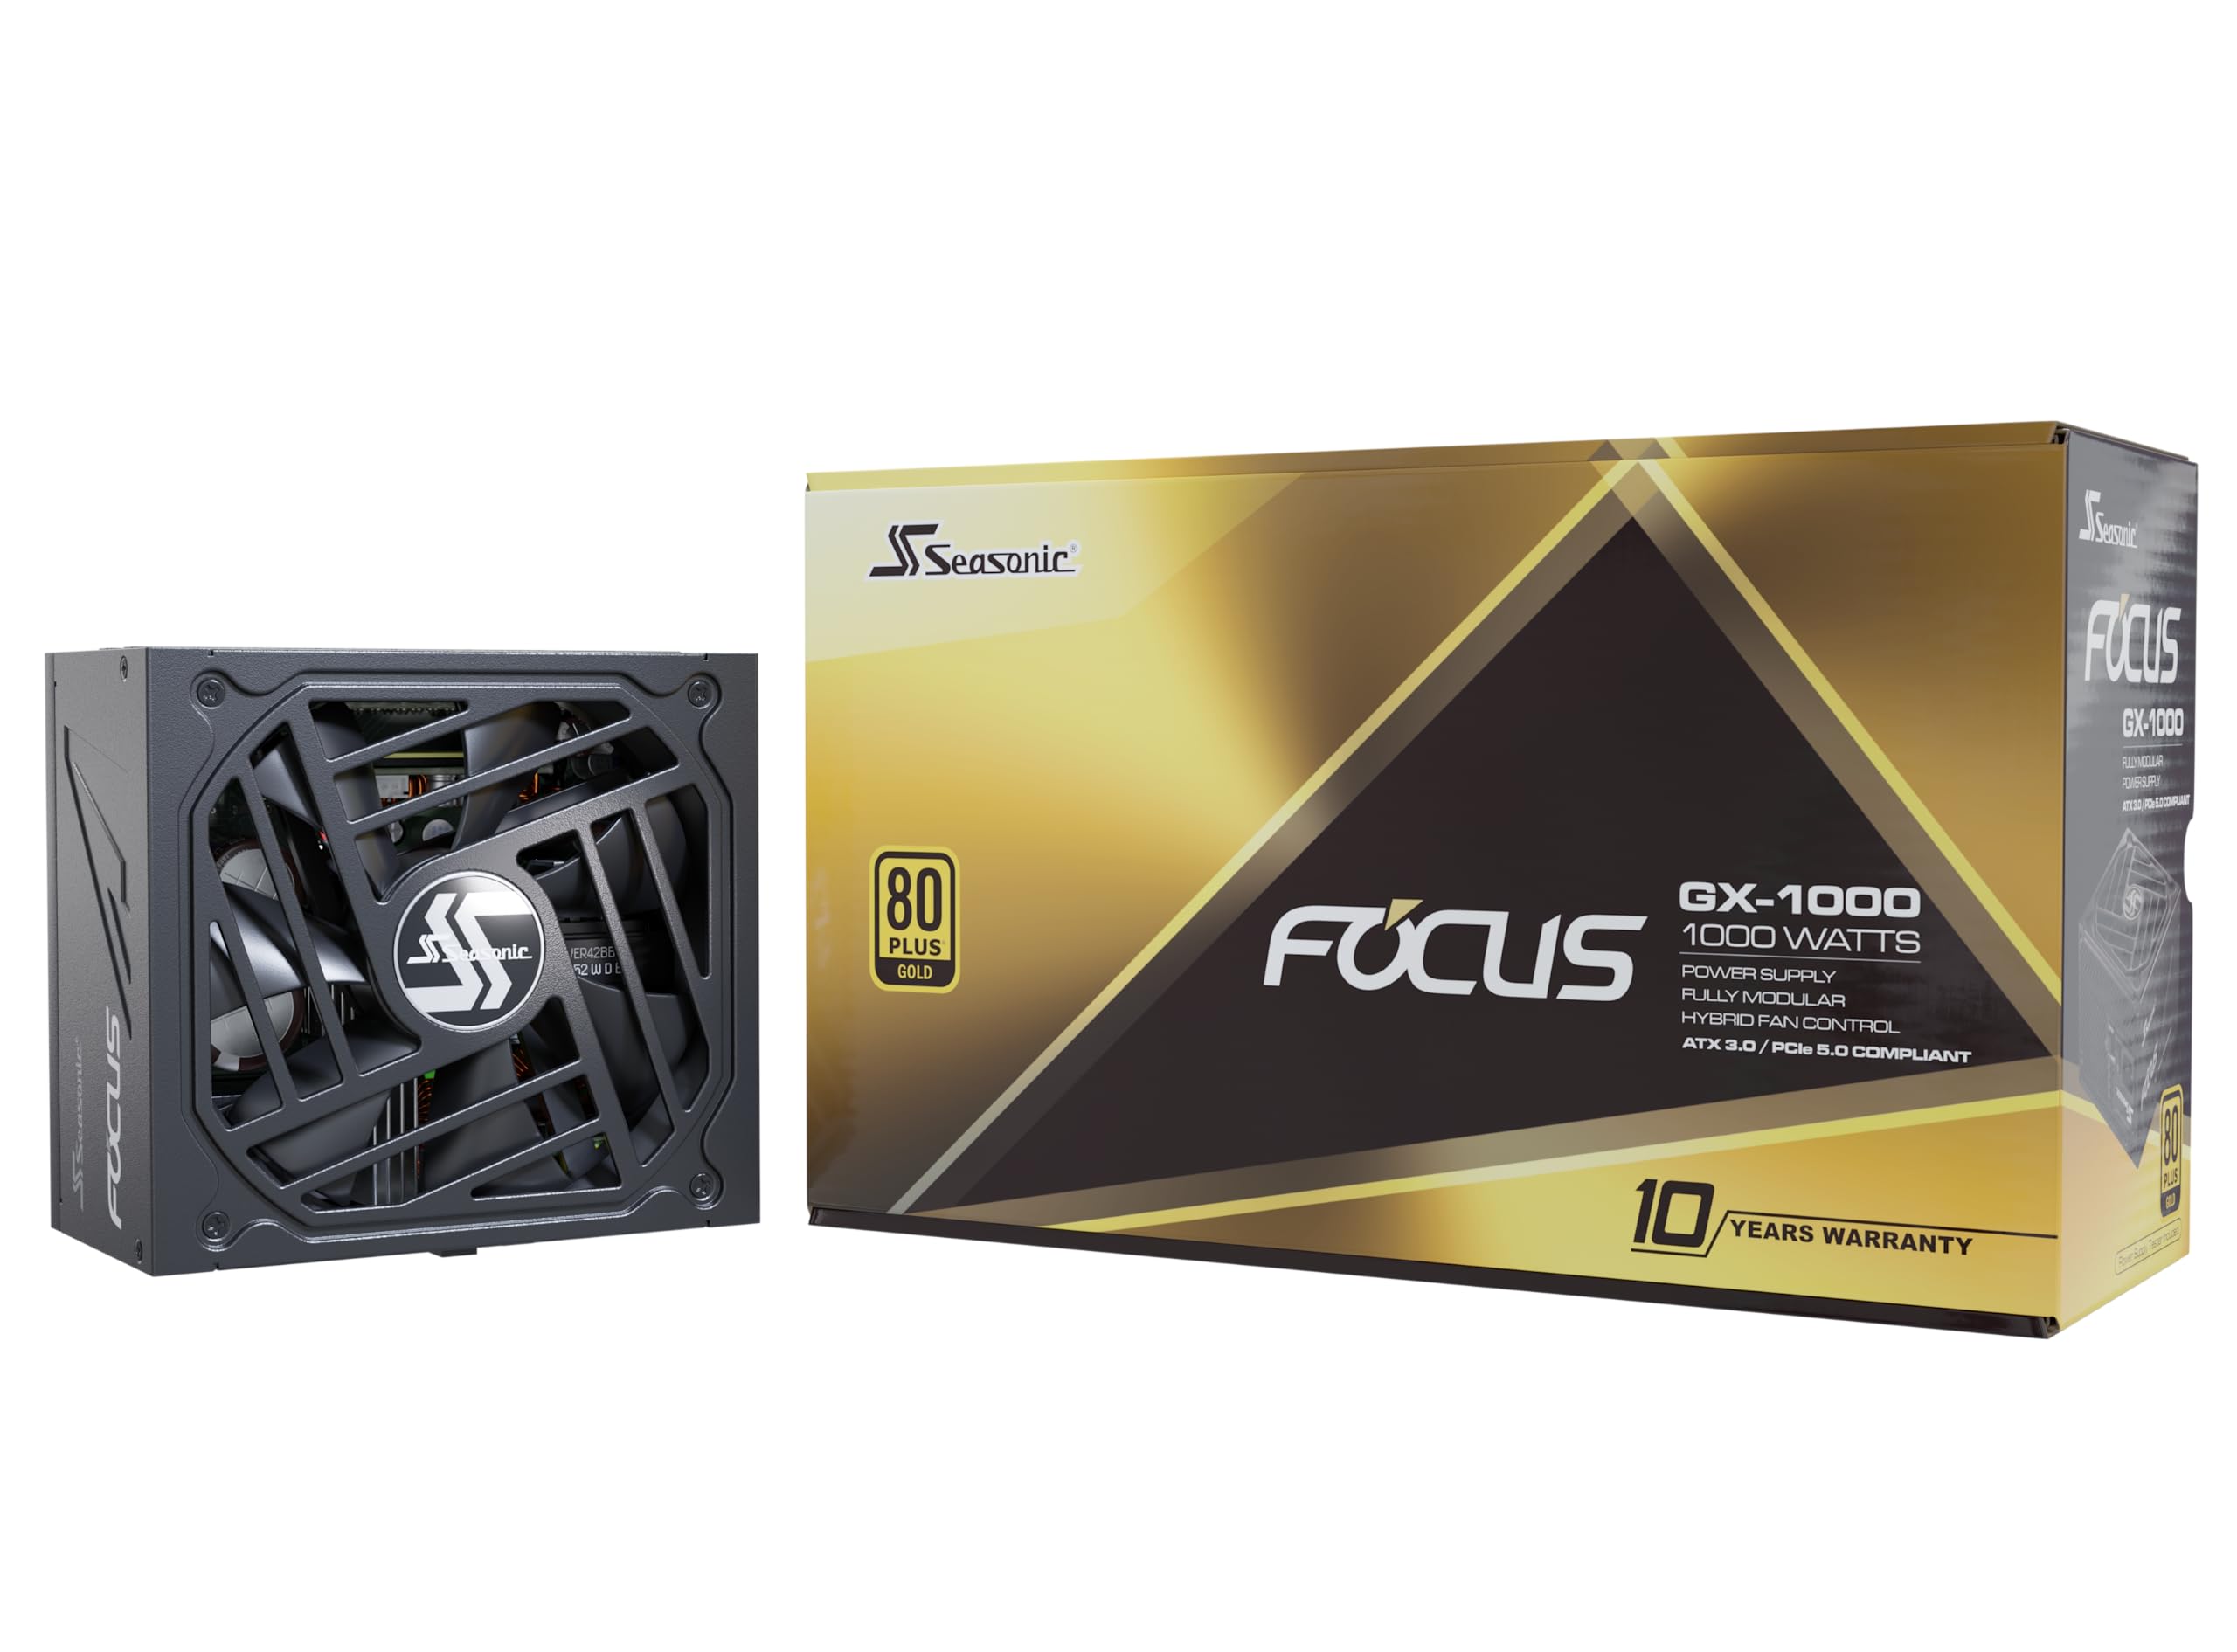 Seasonic Focus V3 GX-1000 $142.86